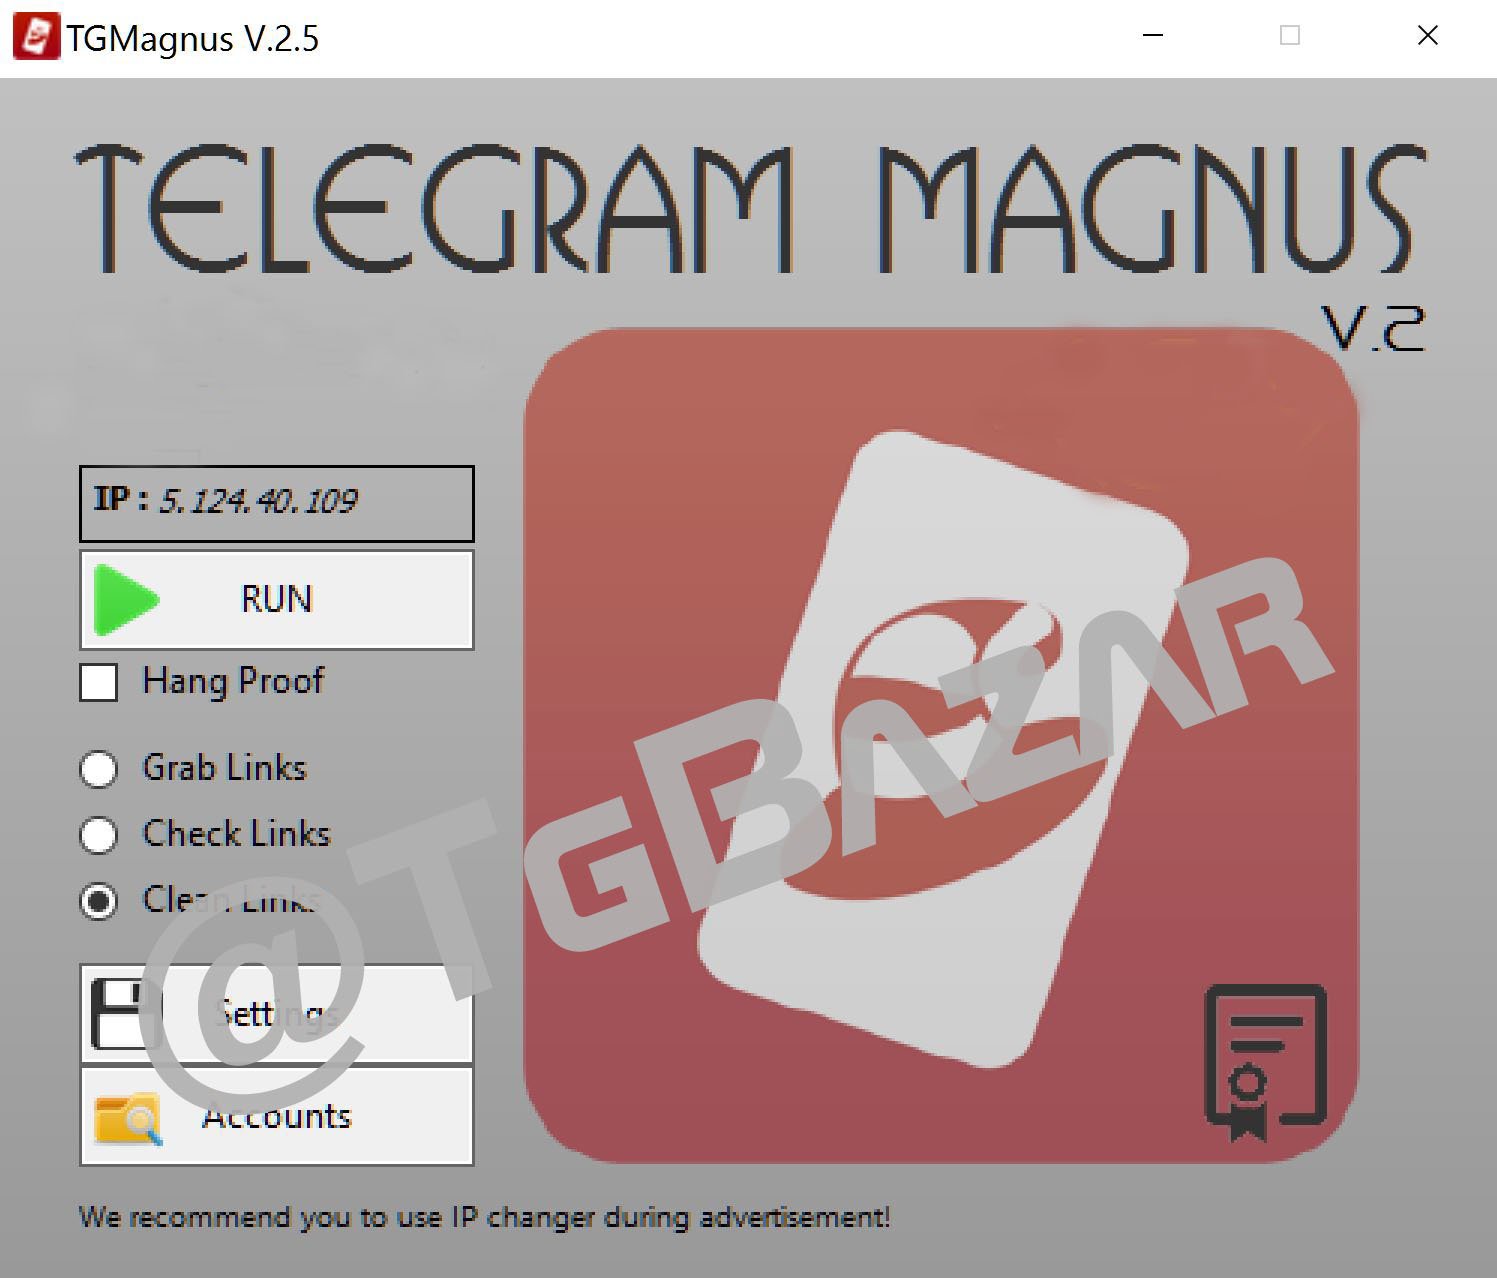 telegram Magnus